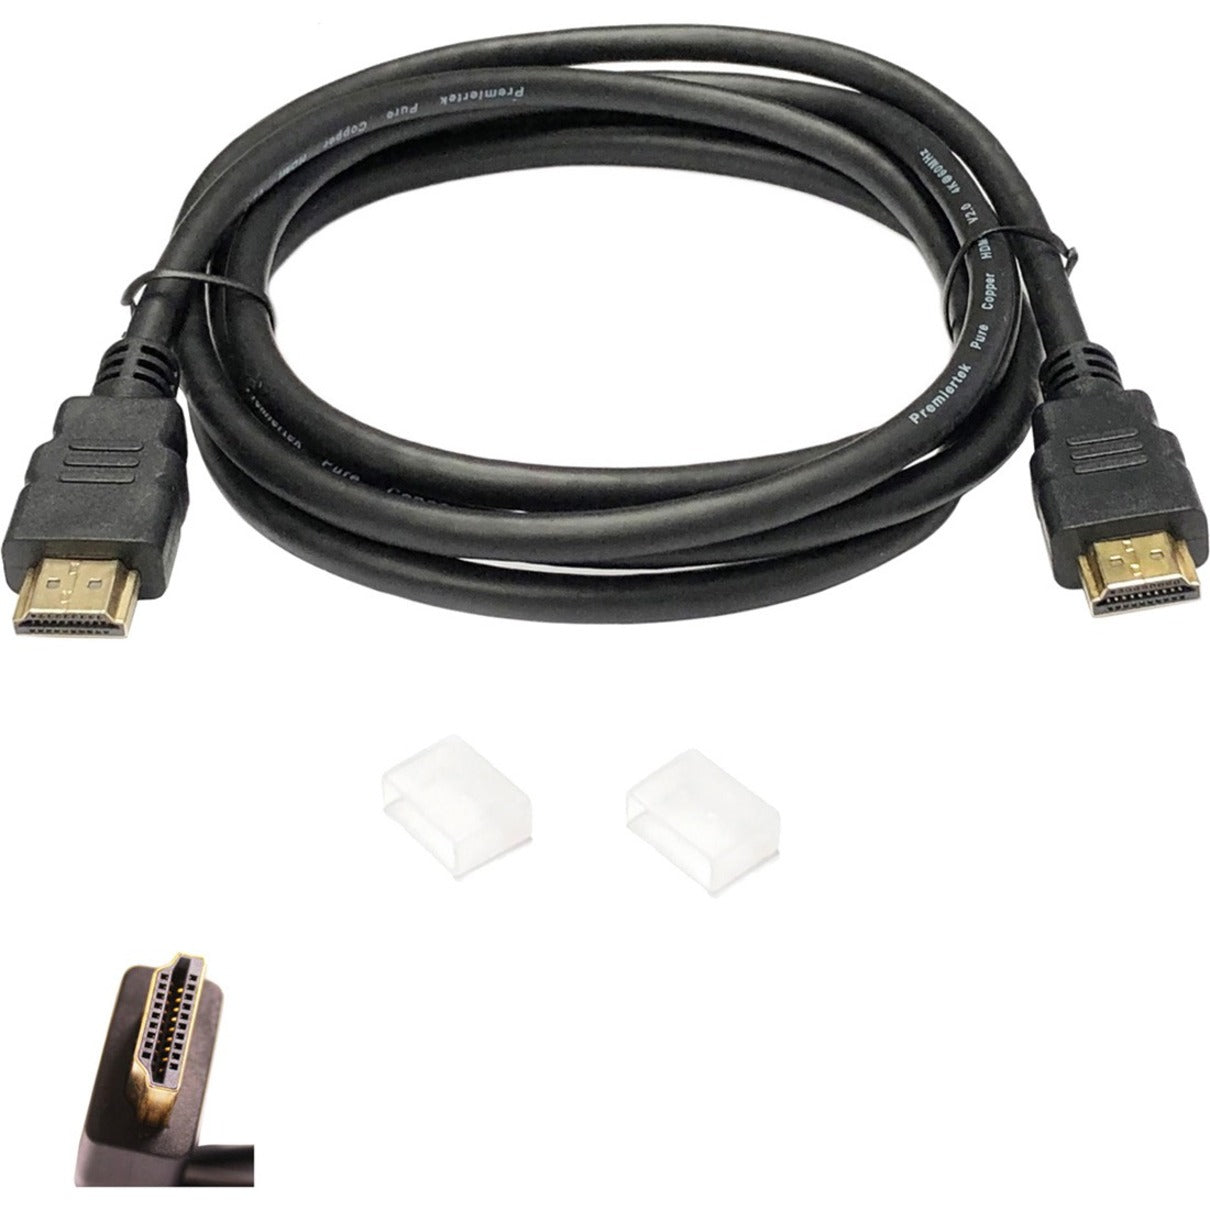 Premiertek HDMI-210 HDMI Cable 10ft, Noise-free, Gold Plated Connectors, Black